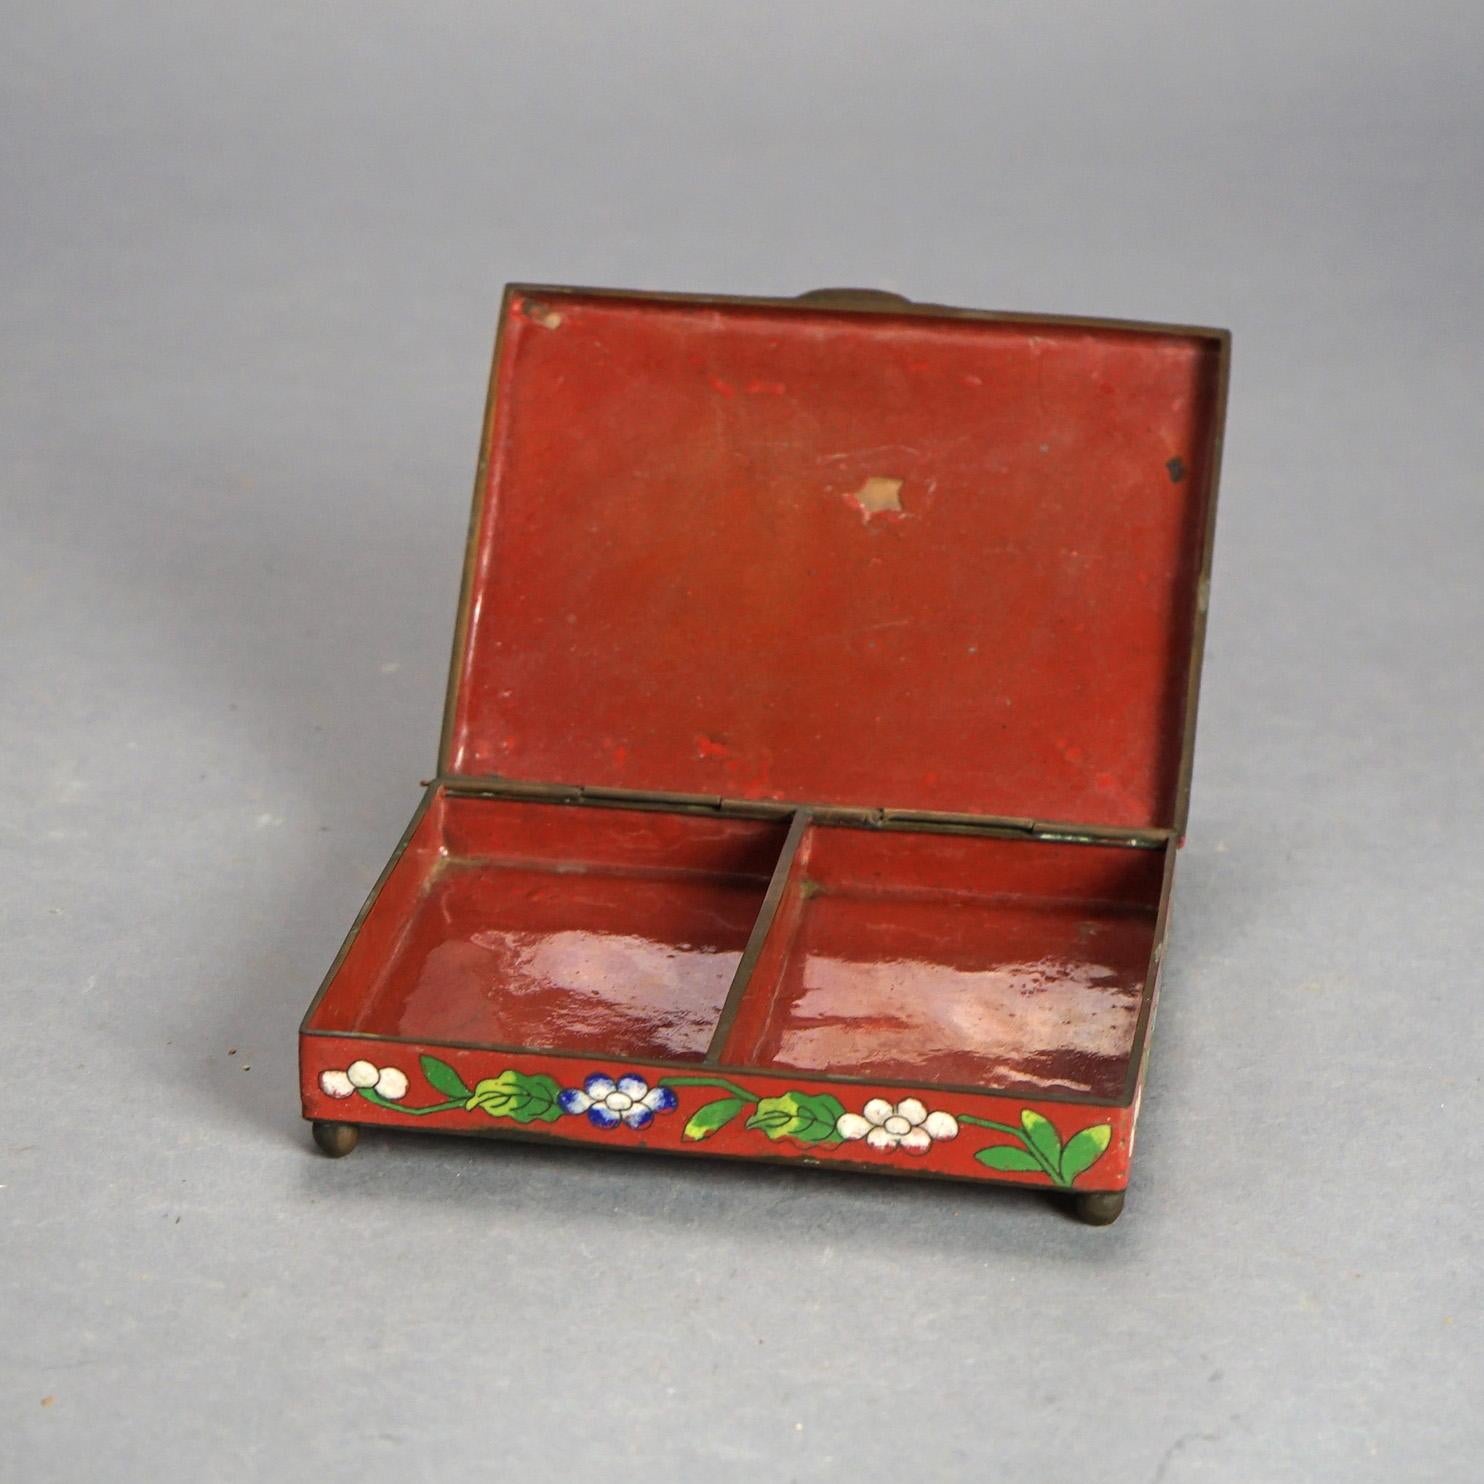 Antike chinesische Bronze Cloisonne Floral emailliert & Fuß Zigarren-Box mit geteilten Innenraum C1920

Maße - 1,5 